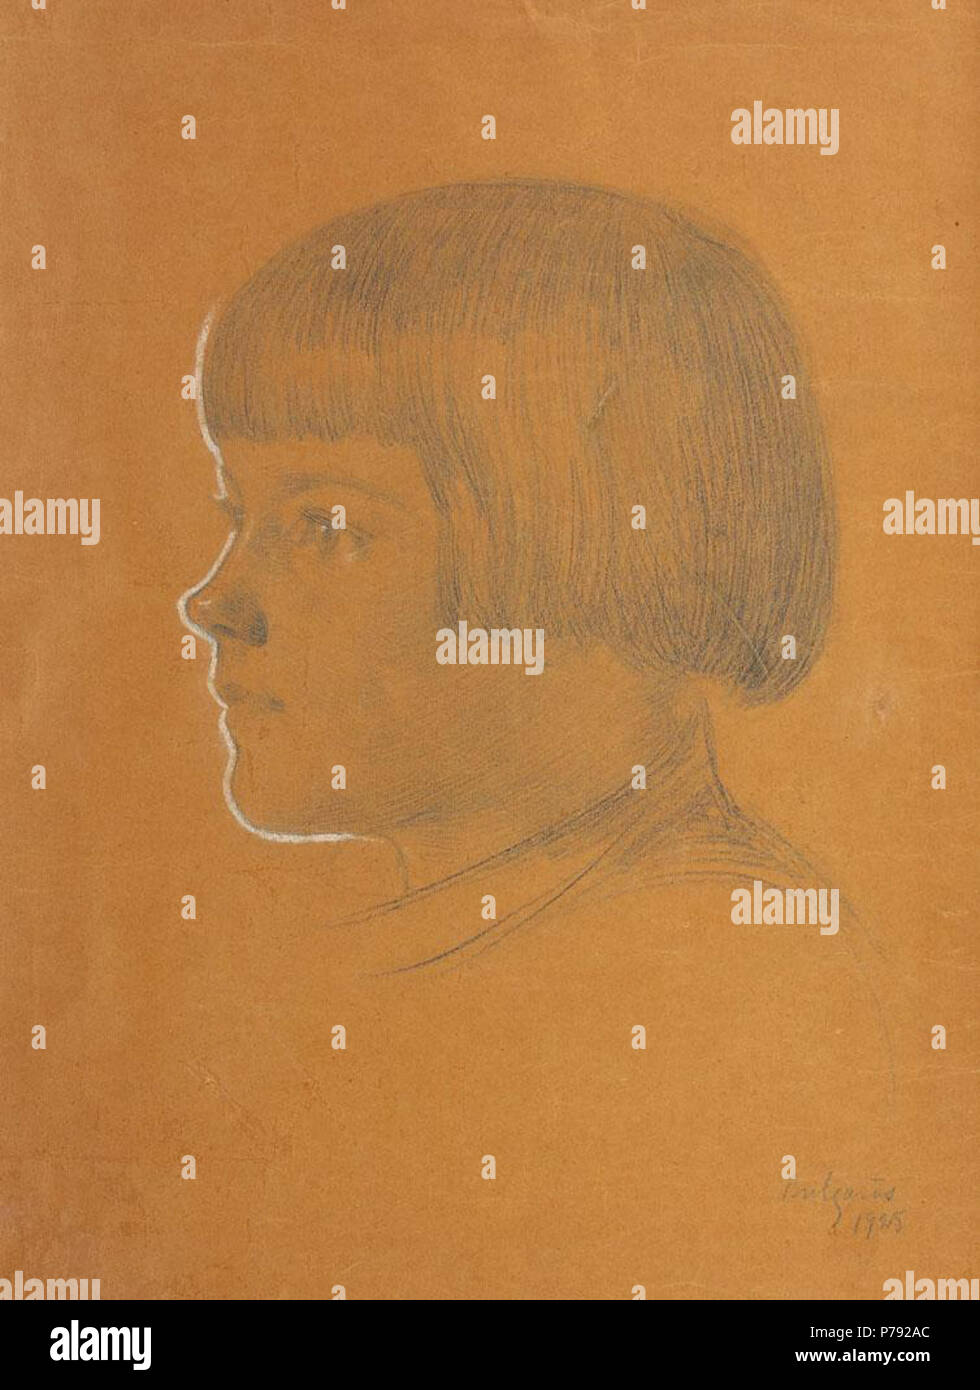 Român: Petre Bulgra - Chip de copil, me cret creion alb hârtie pe, 47 x  32,5 cm, me semnat dreapta datat jos, în creion, Bulgra, 1925 . 1925 46  Petre Bulgaras - Chip de copil Fotografía de stock - Alamy